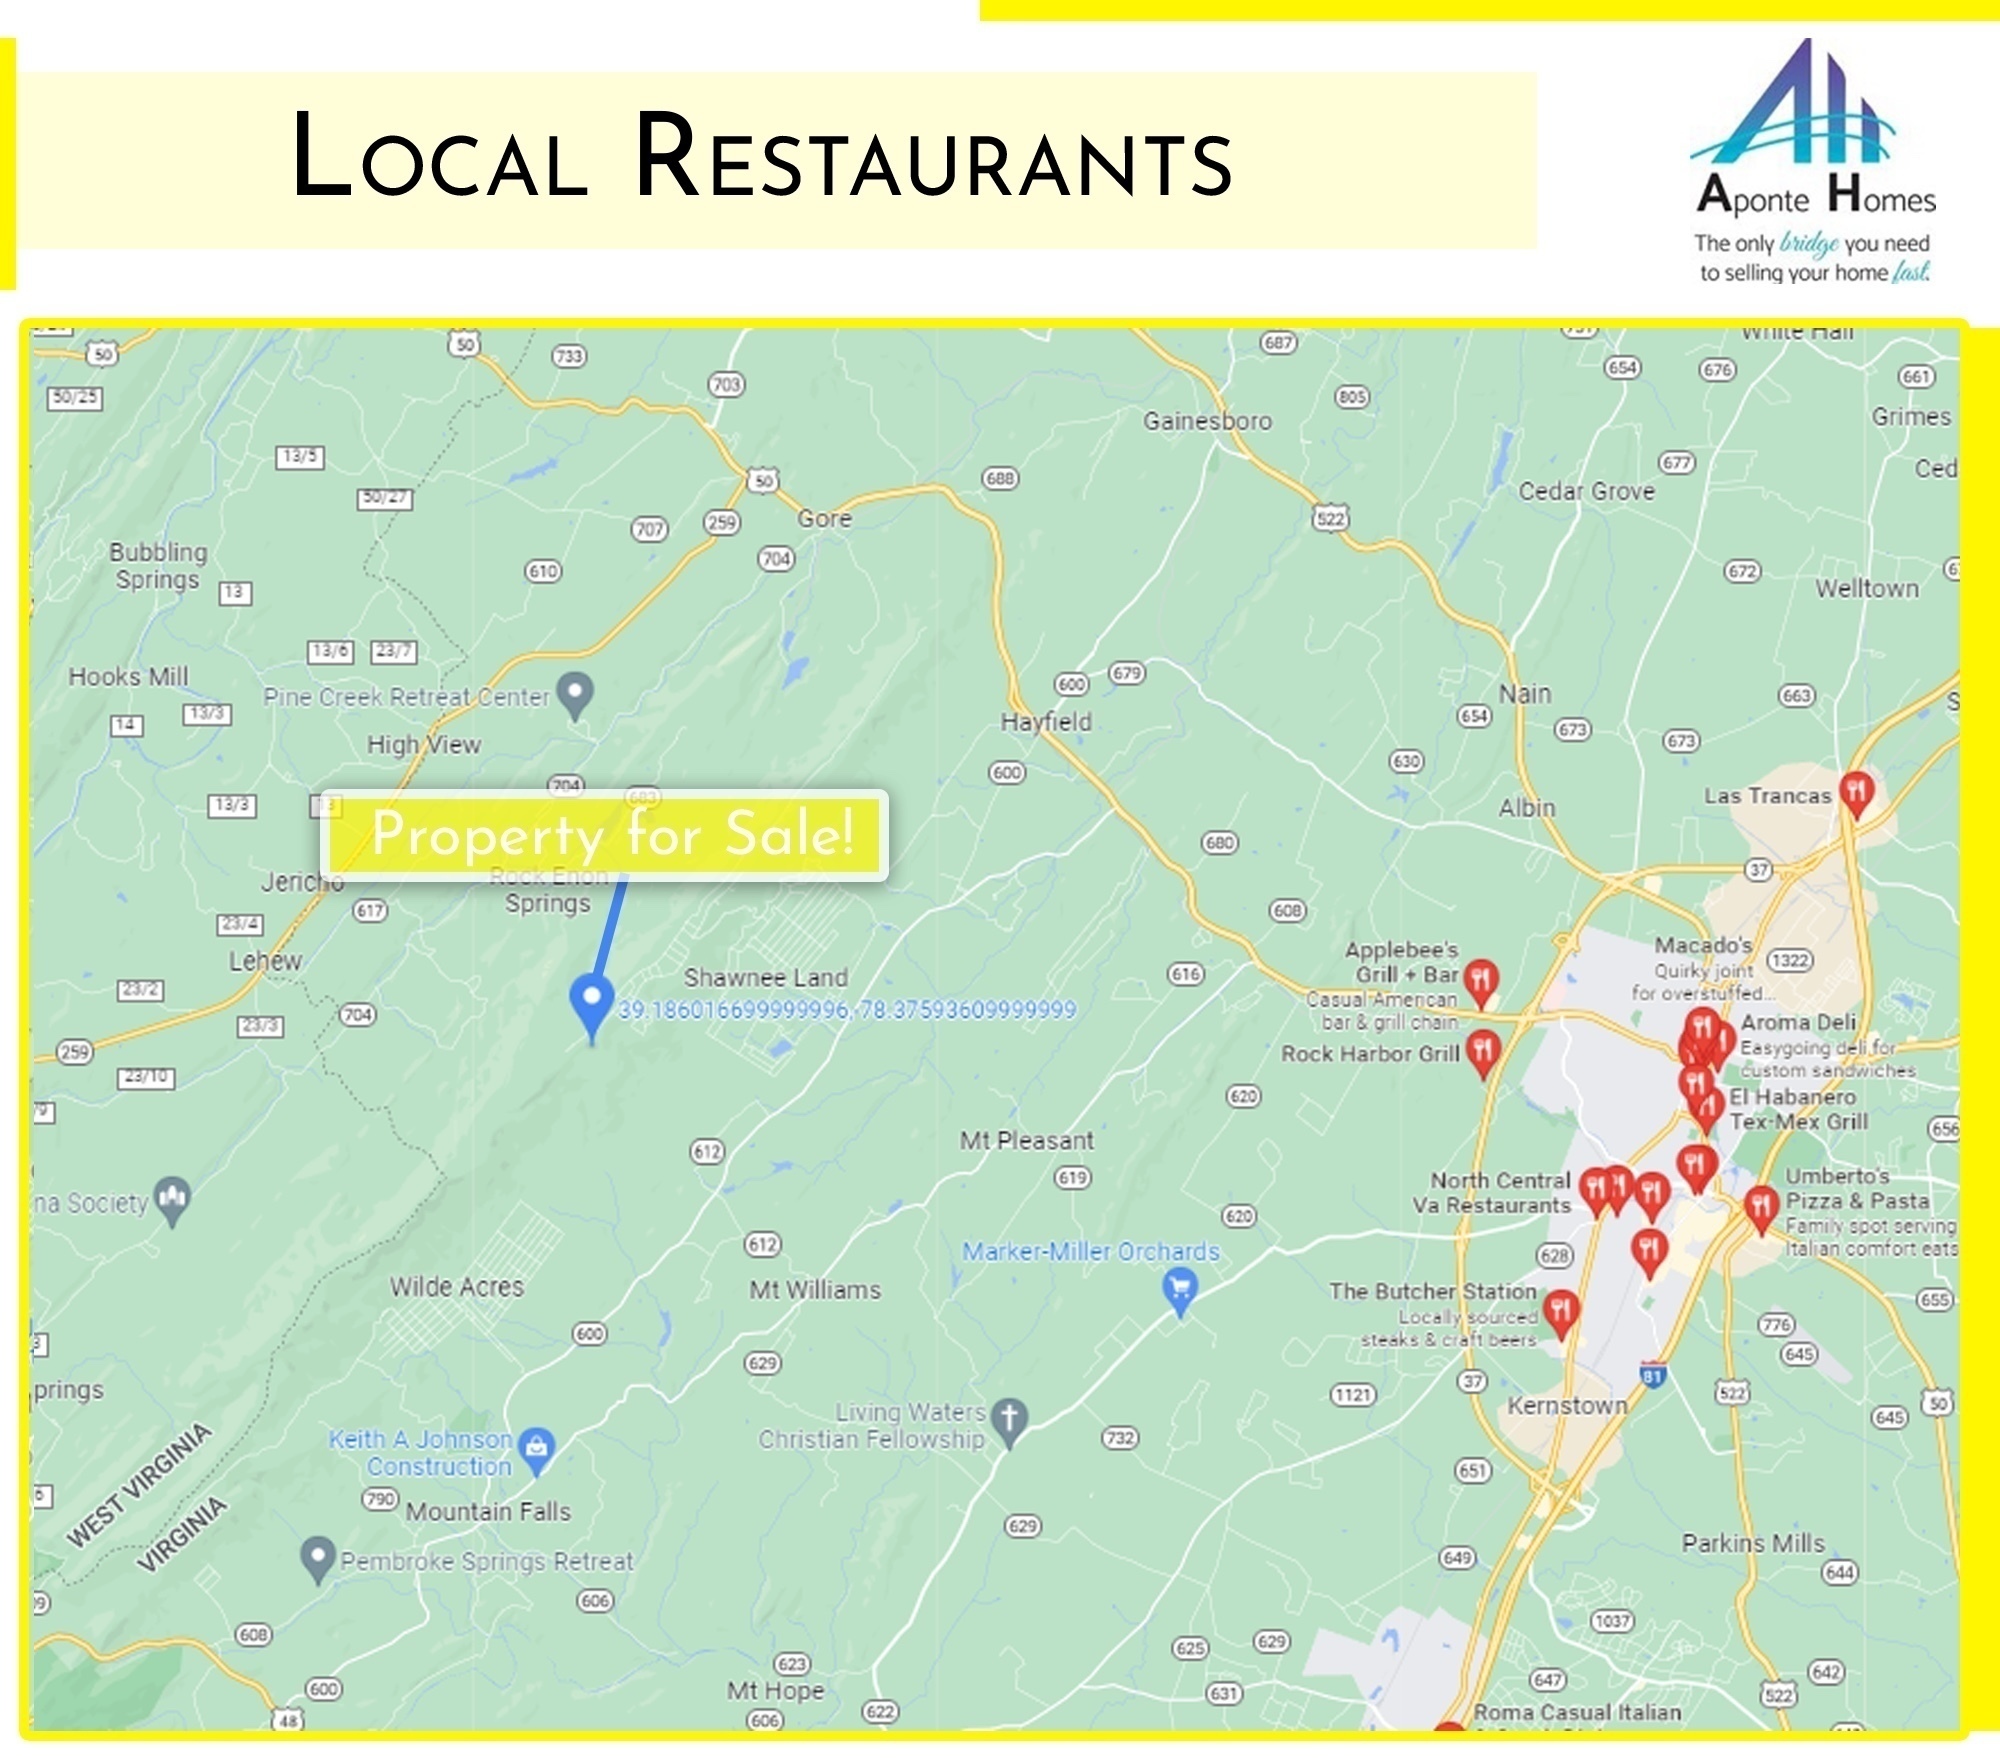 Nearby Restaurants